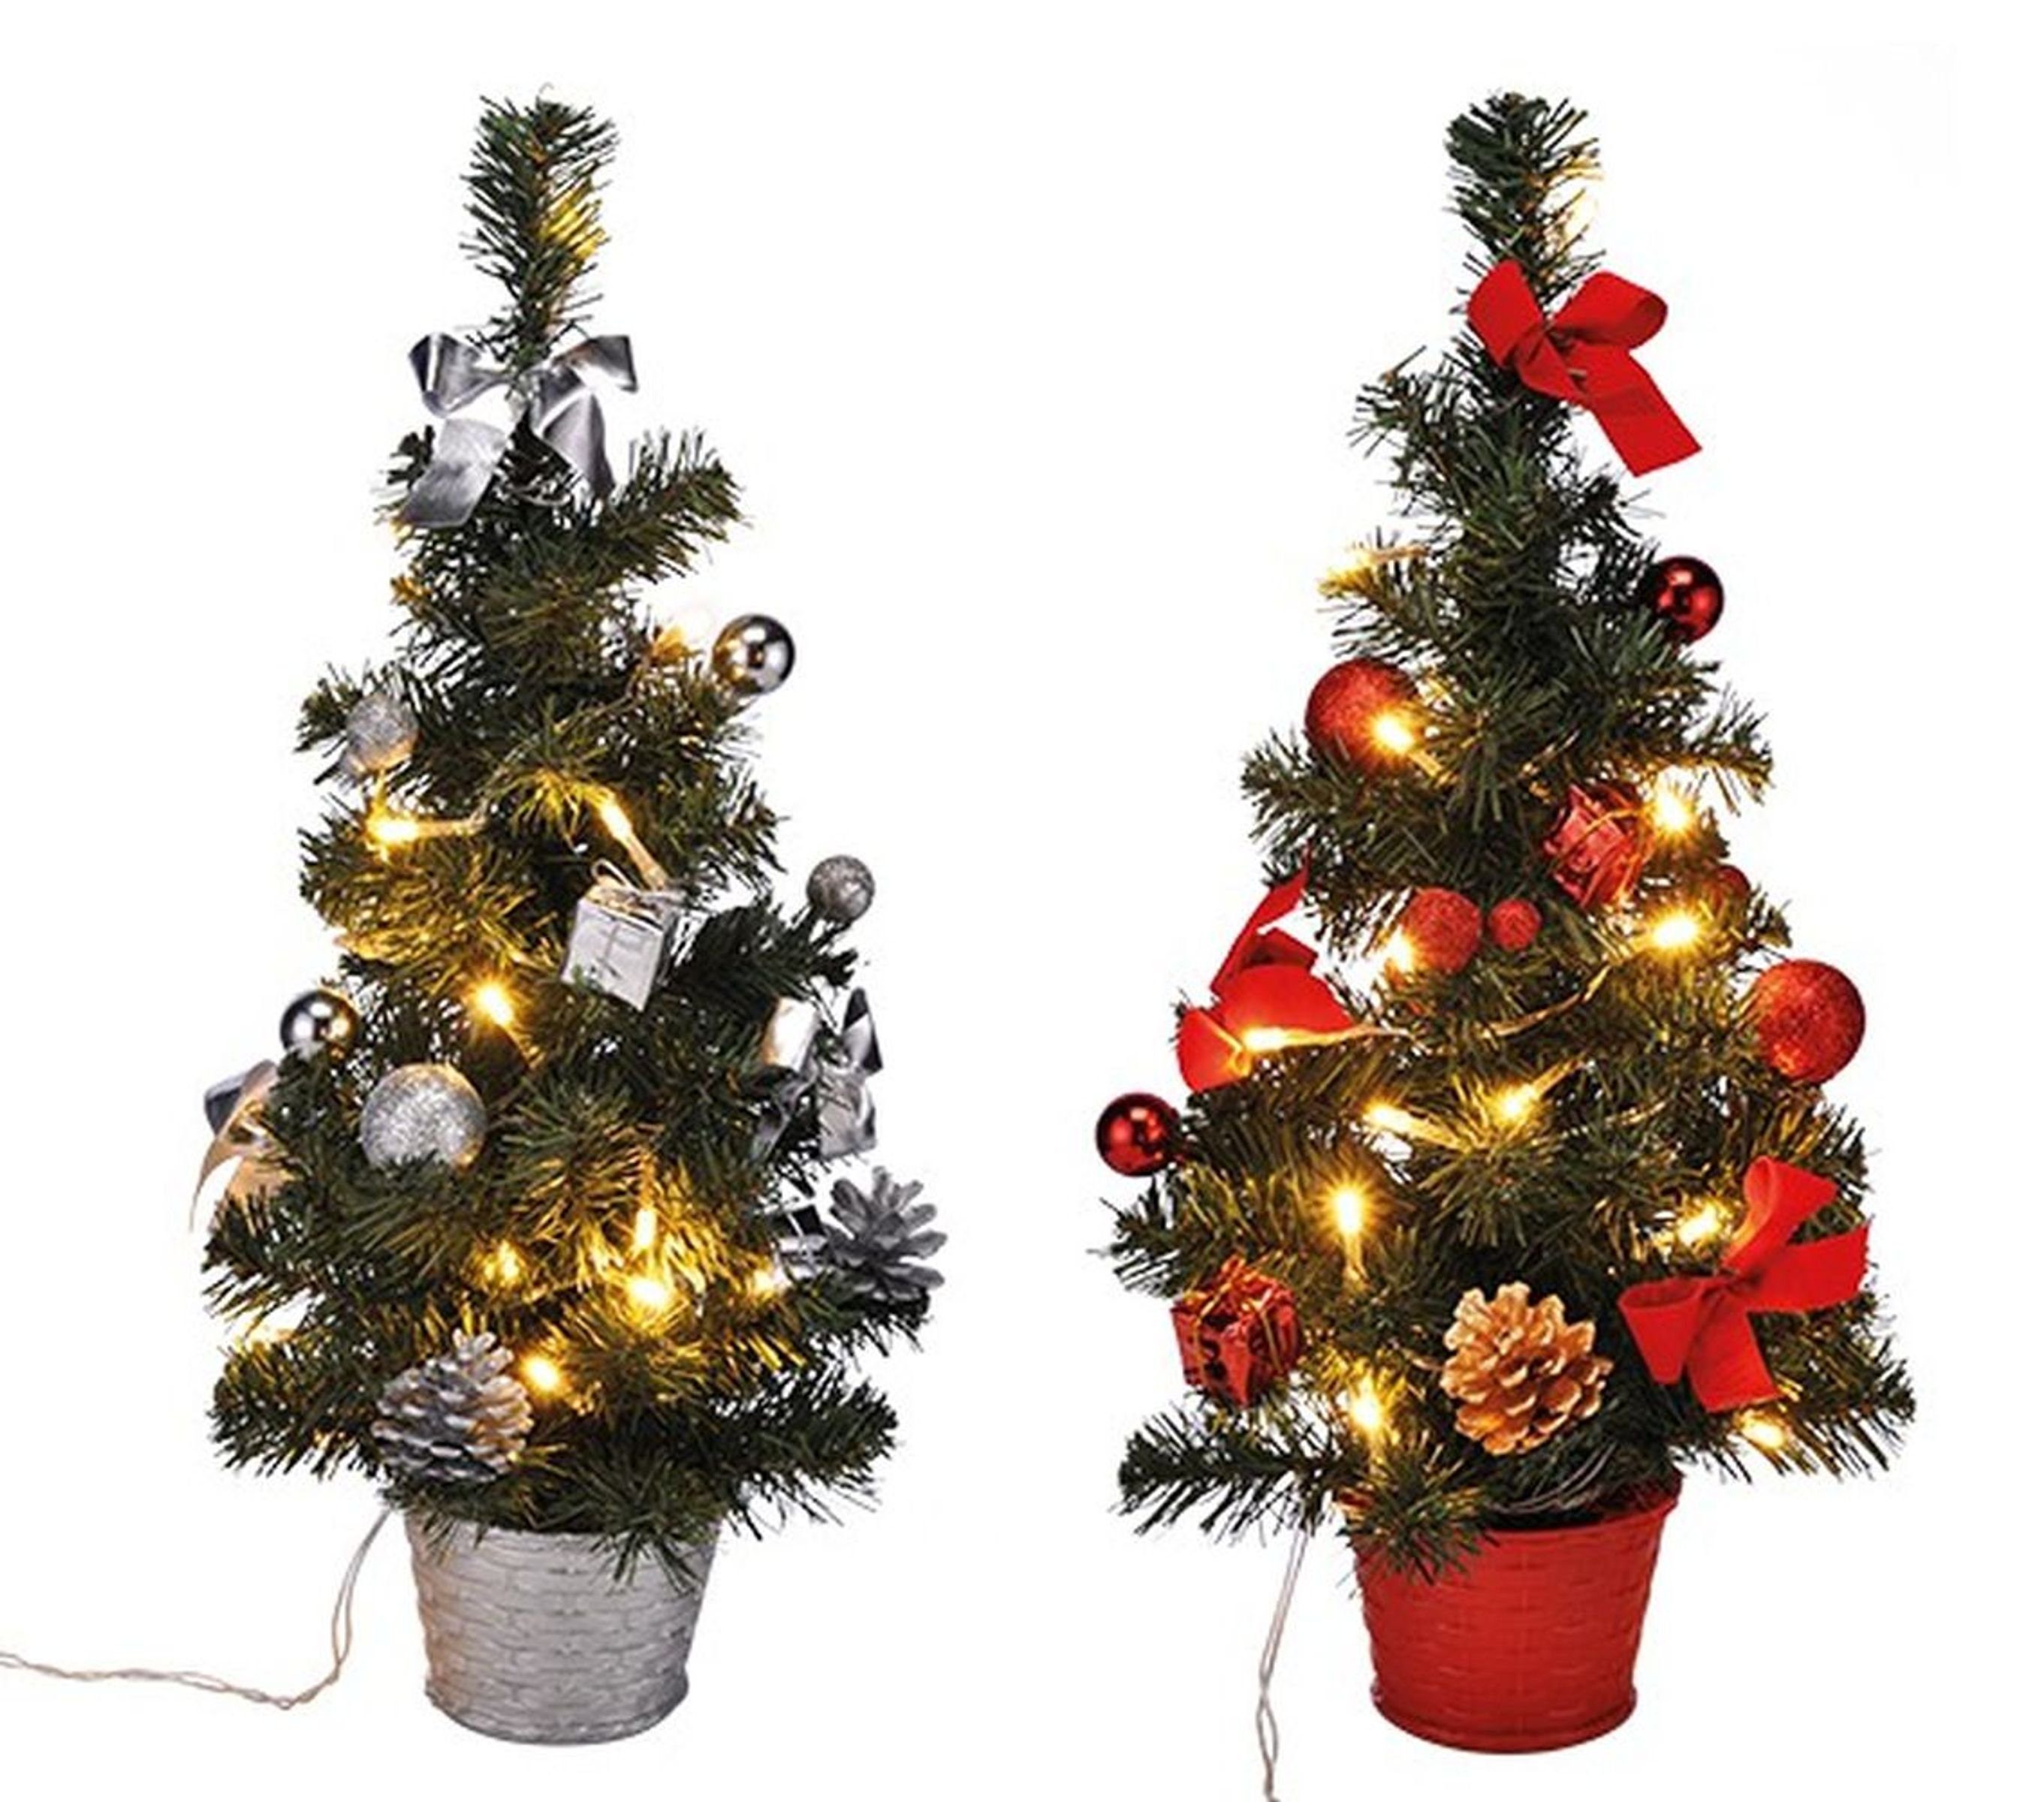 Super günstig! Gravidus Künstlicher Weihnachtsbaum LED Weihnachtsbaum künstlicher Tannenbaum cm 45